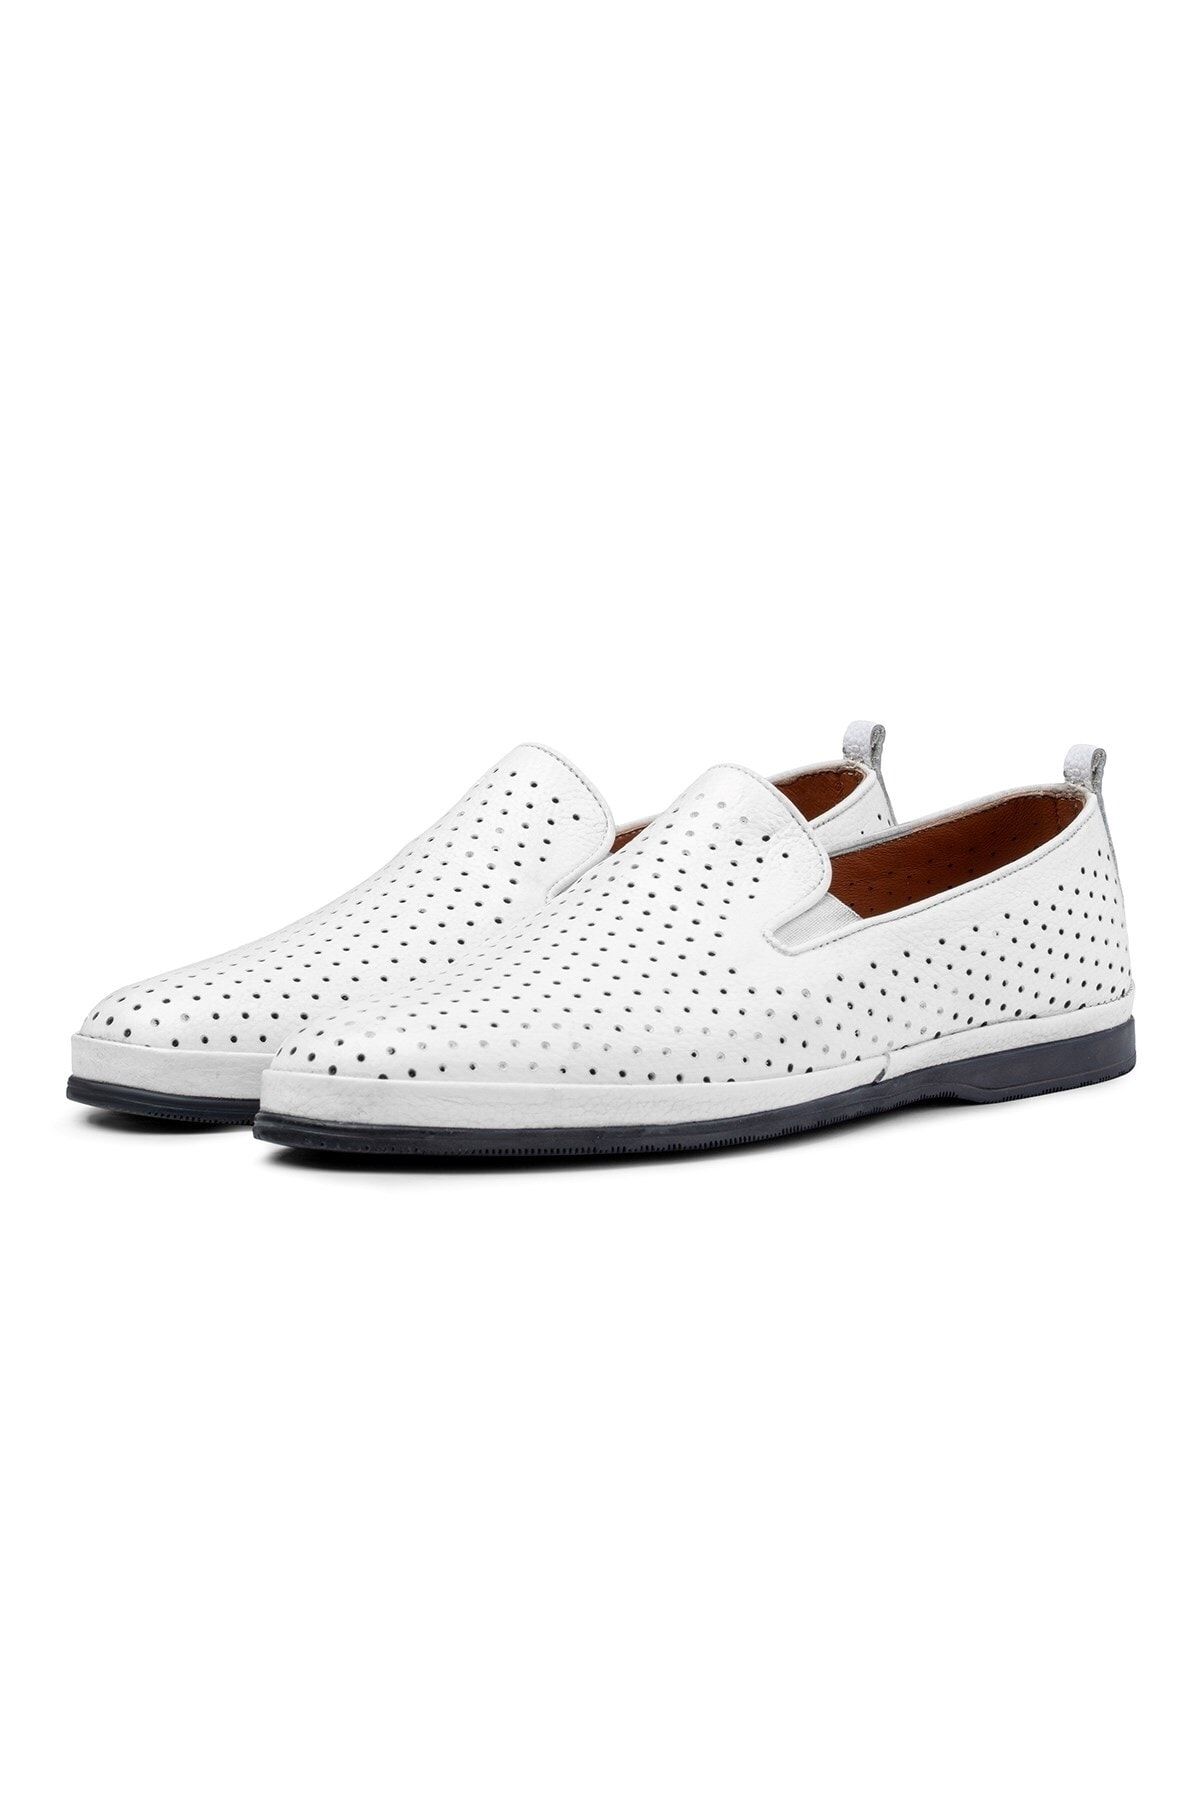 Ducavelli Komba Hakiki Deri Comfort Ortopedik Erkek Günlük Ayakkabı, Baba Ayakkabısı Ortopedik Loafer Ayakkabı